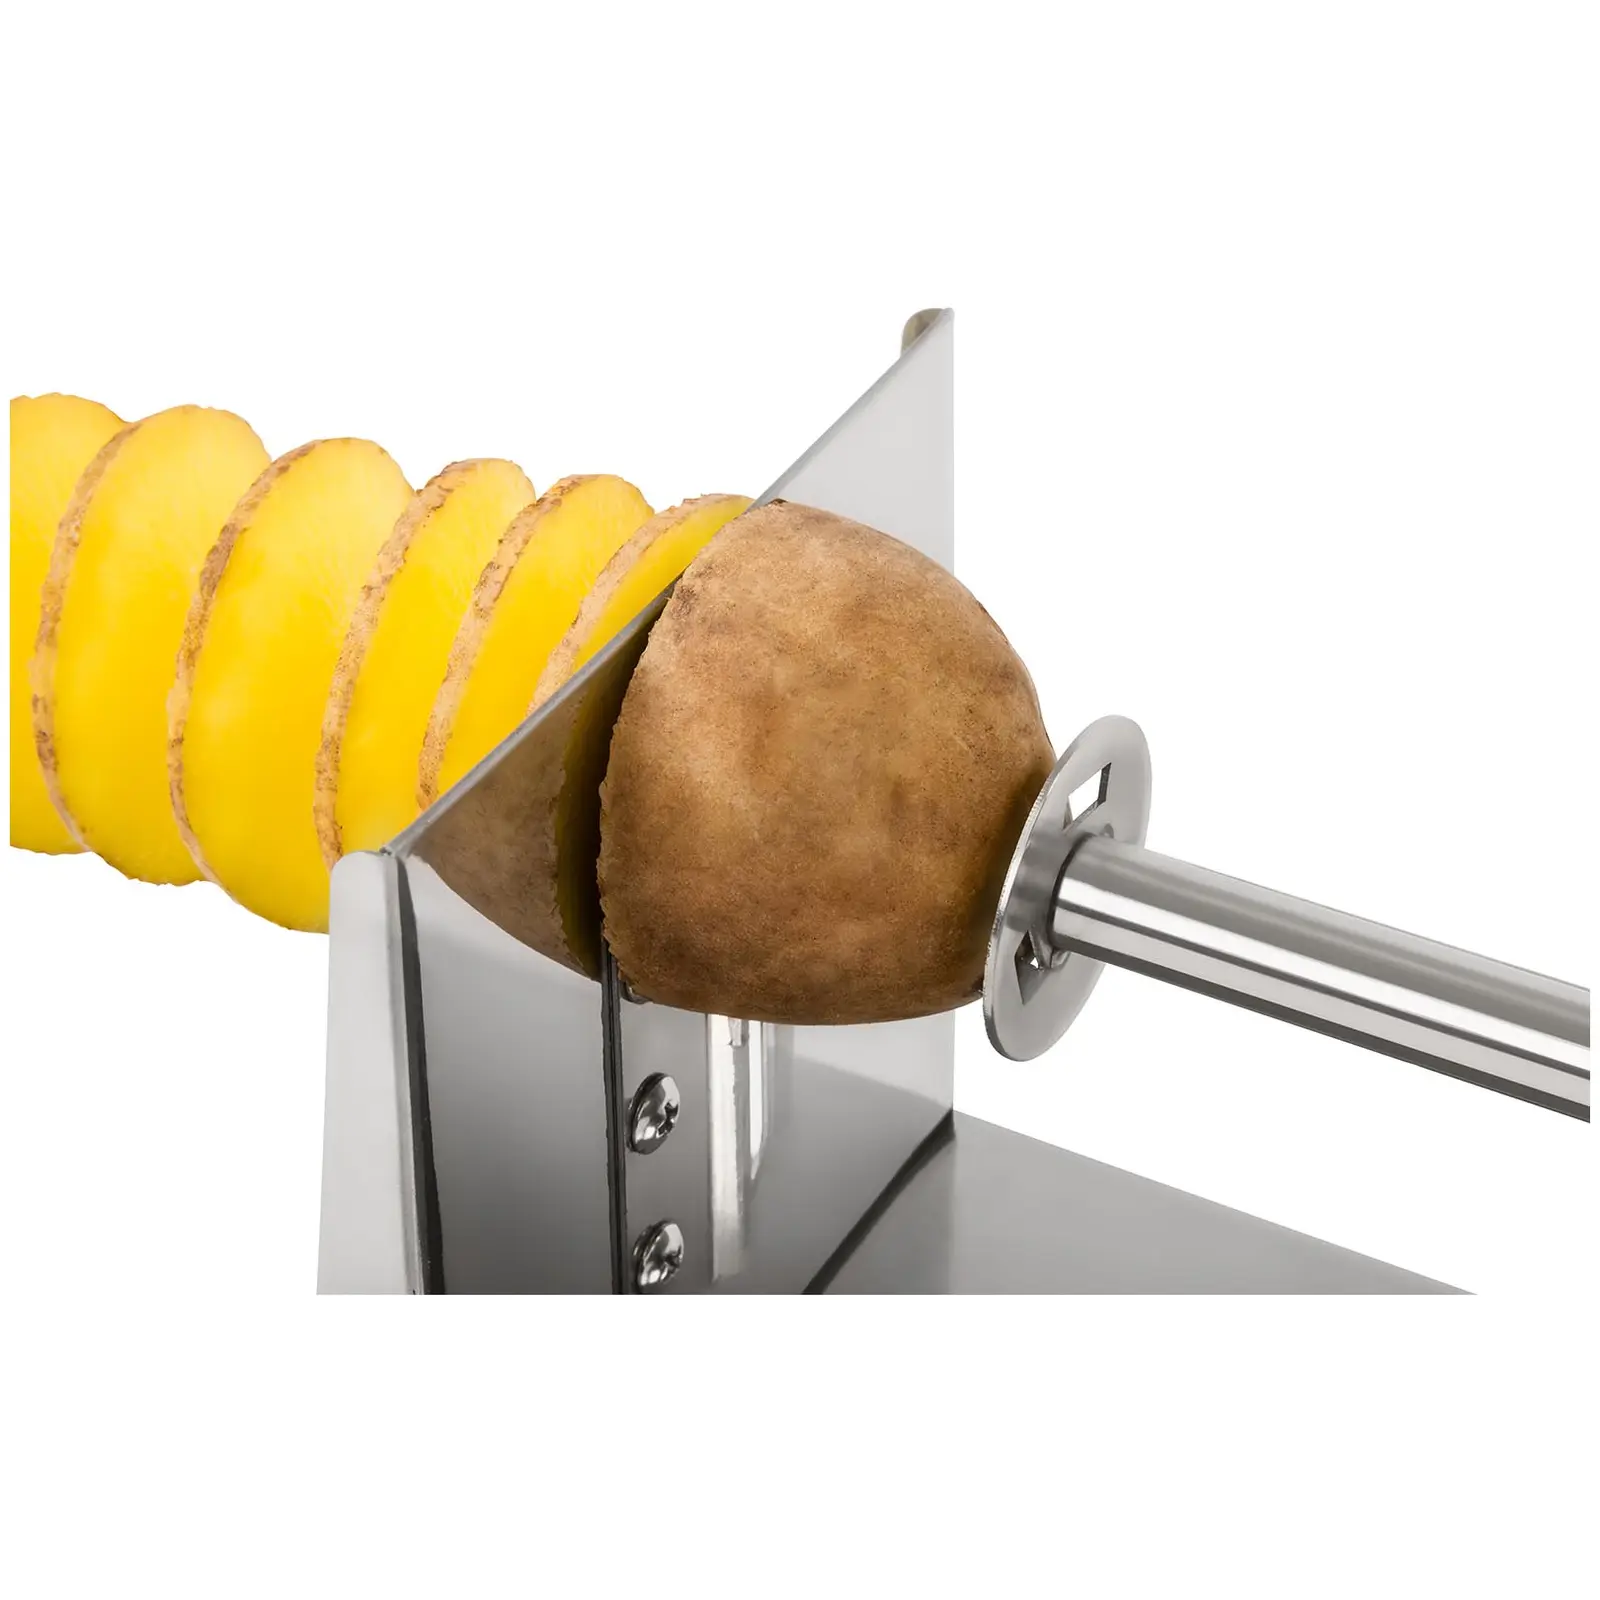 Spiralschneider - für Kartoffelspiralen - manuell - Edelstahl - Royal Catering